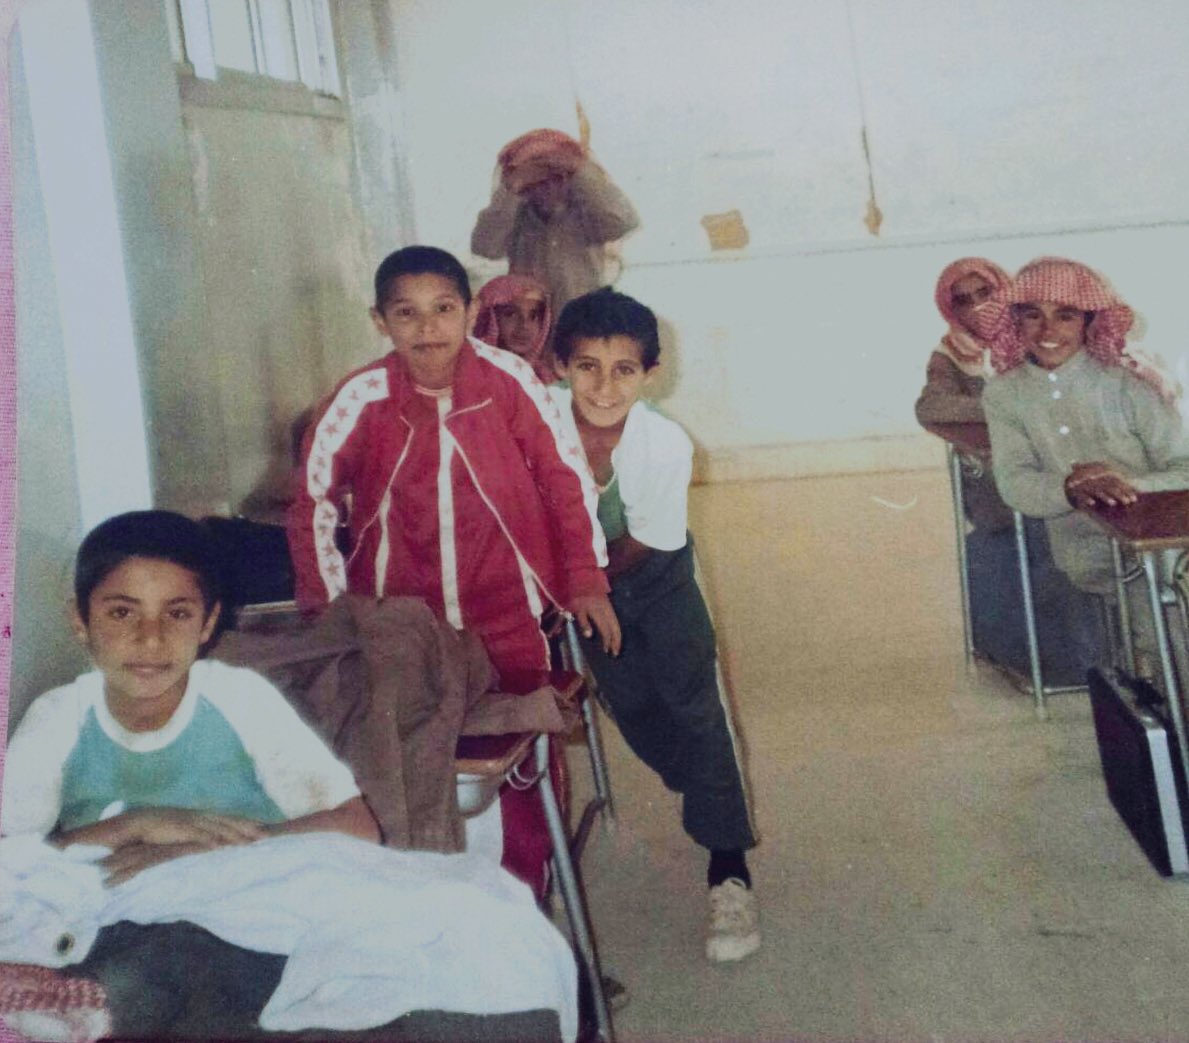 لقطة لتلاميذ من مدرسة بمنطقة عسير قبل 40 عام